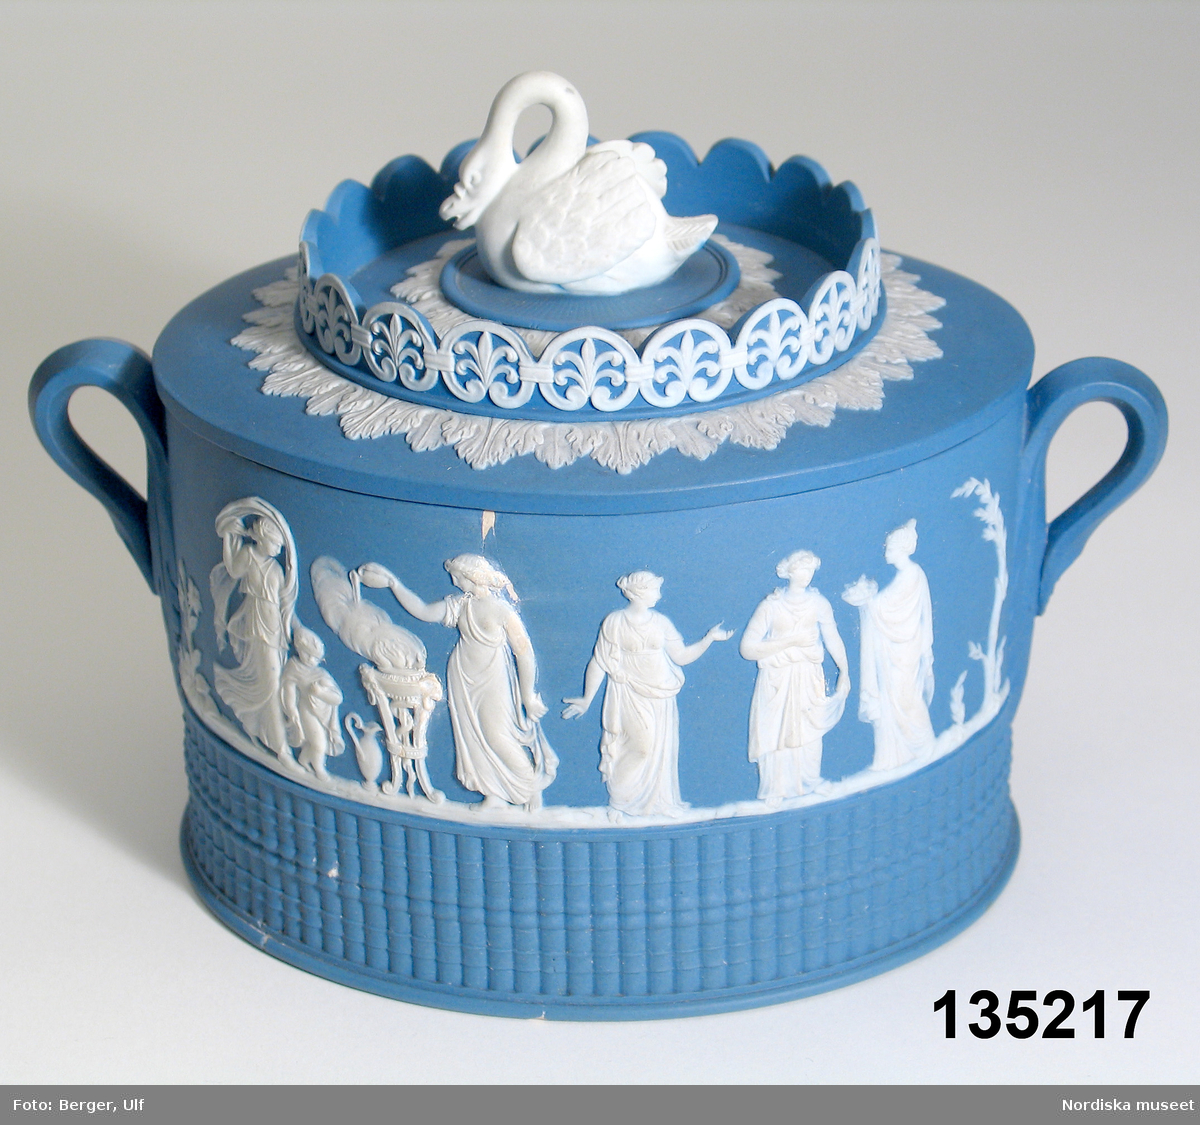 Text i Dukade bord: "Sockerskål av blå "jasper ware" med pålagd dekor i Wedgwoodstil. Stämplad "ADAMS" = William Adams & Sons
Ltd, Tunstall and Stoke, Staffordshire, England.
Stämpeln användes 1787-1805. "
